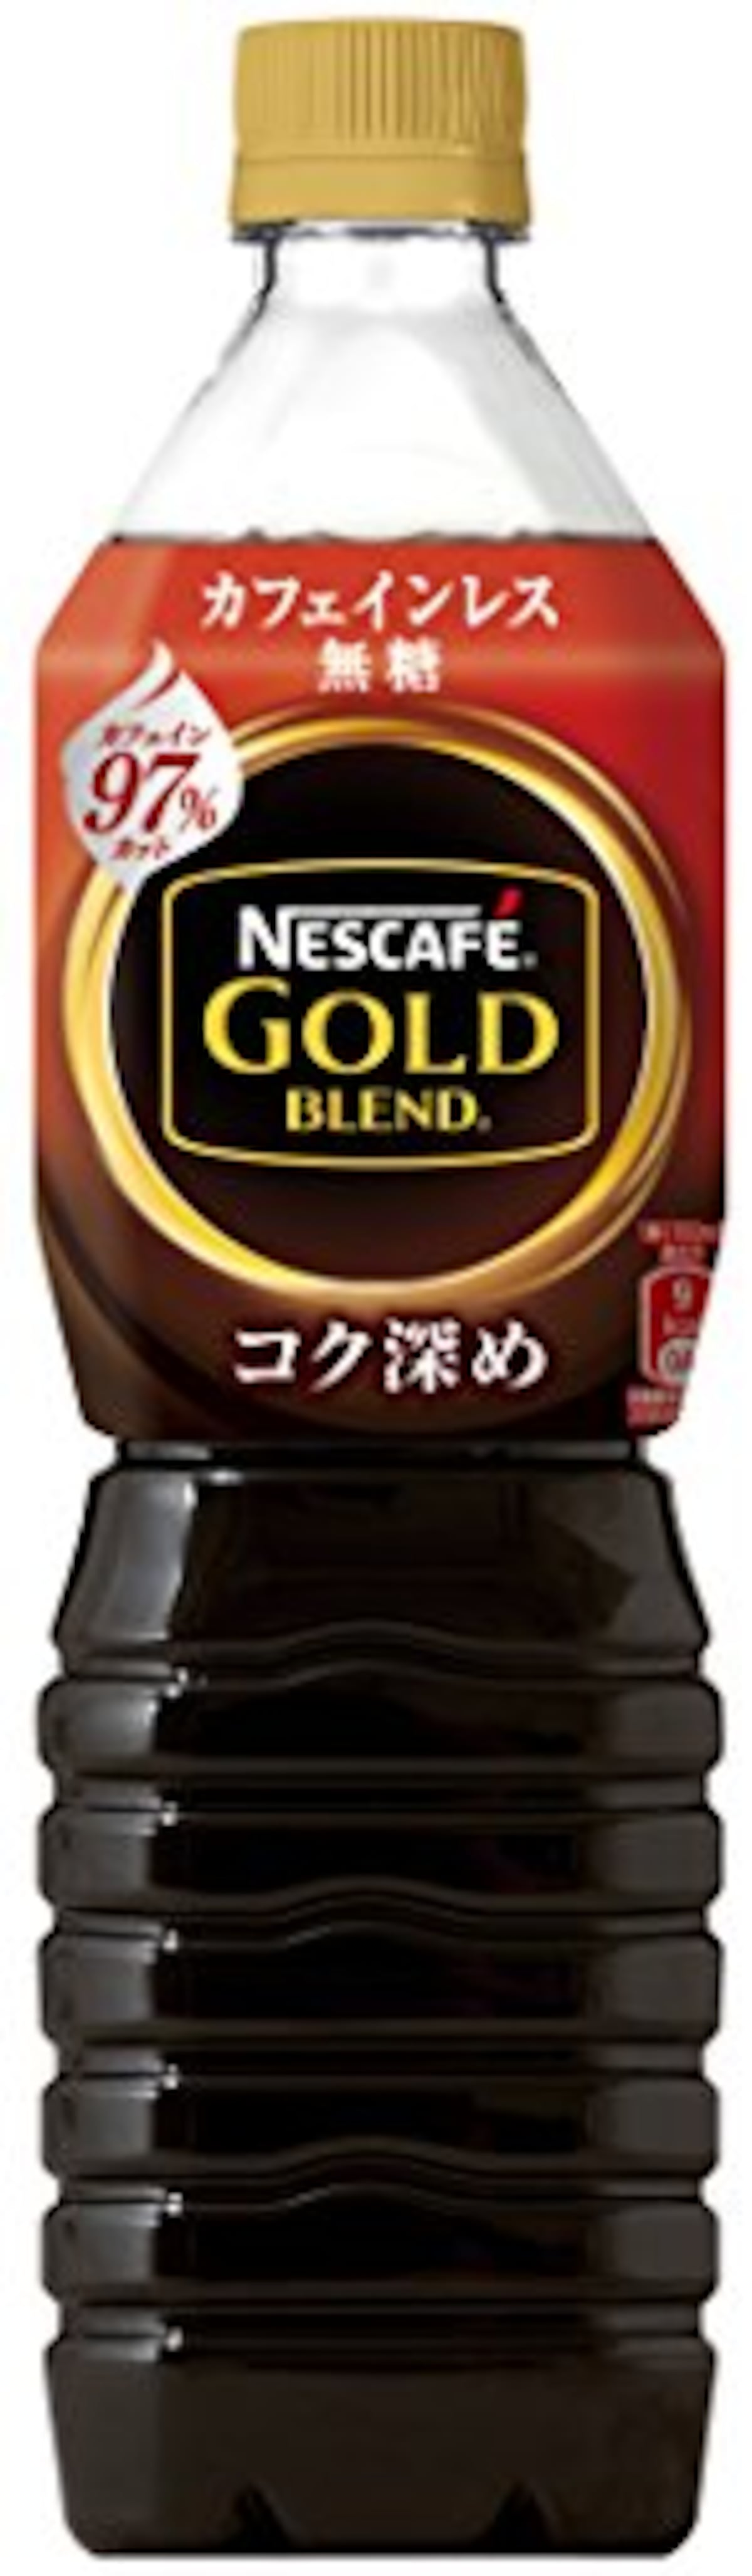 ネスカフェ ゴールドブレンド コク深め ボトルコーヒー 900ml×12本